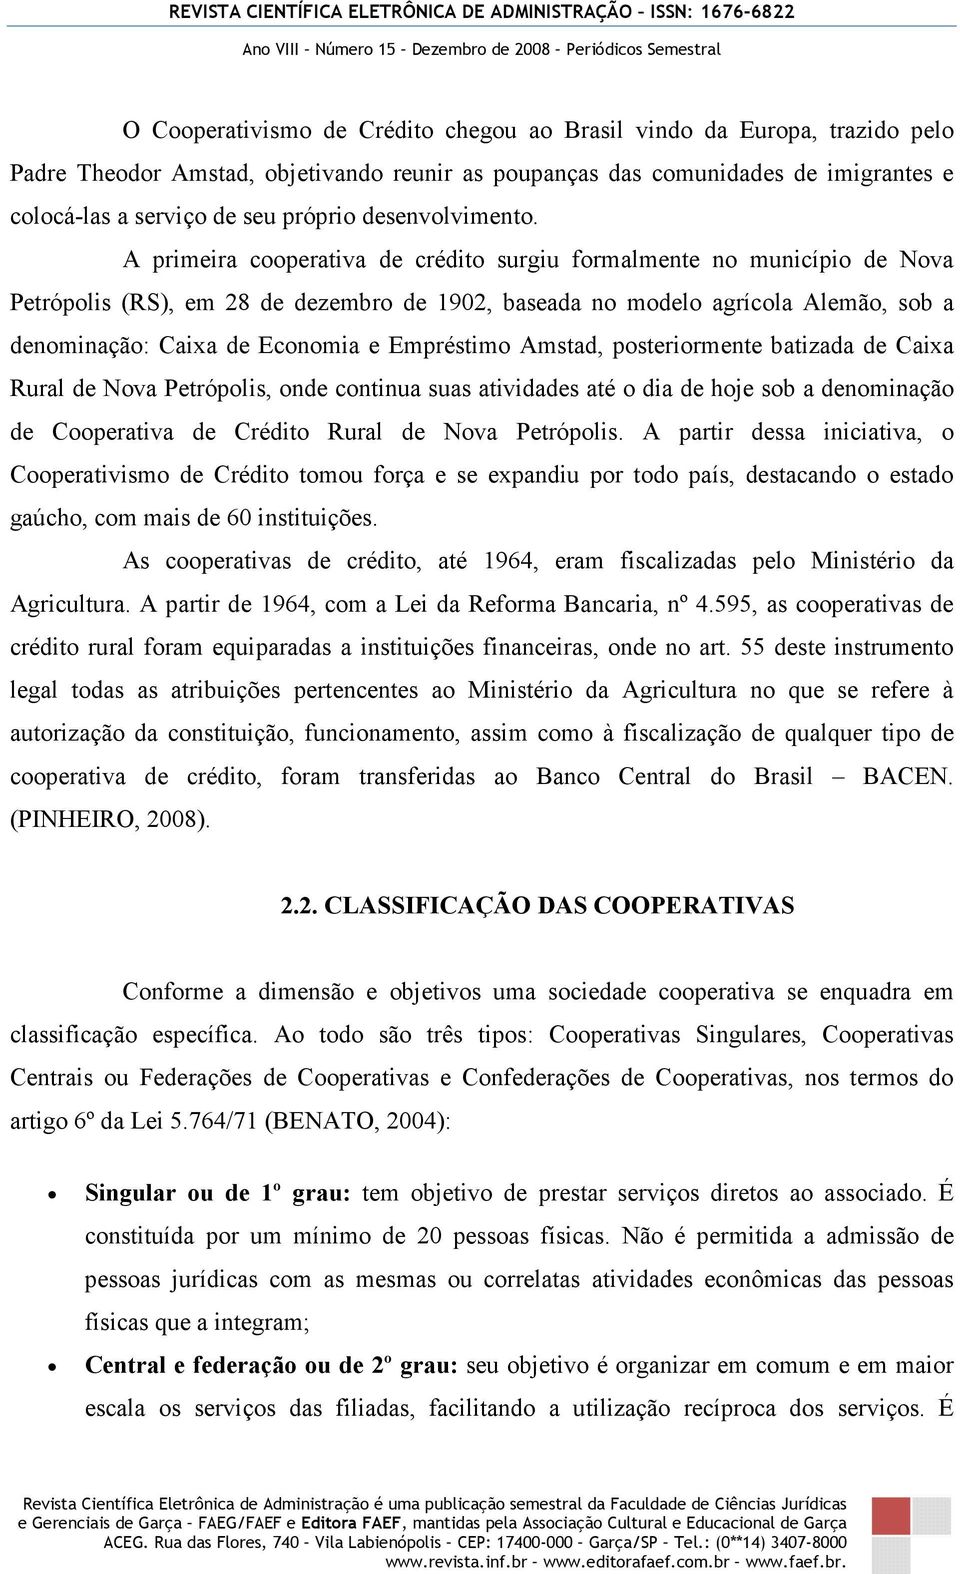 A primeira cooperativa de crédito surgiu formalmente no município de Nova Petrópolis (RS), em 28 de dezembro de 1902, baseada no modelo agrícola Alemão, sob a denominação: Caixa de Economia e